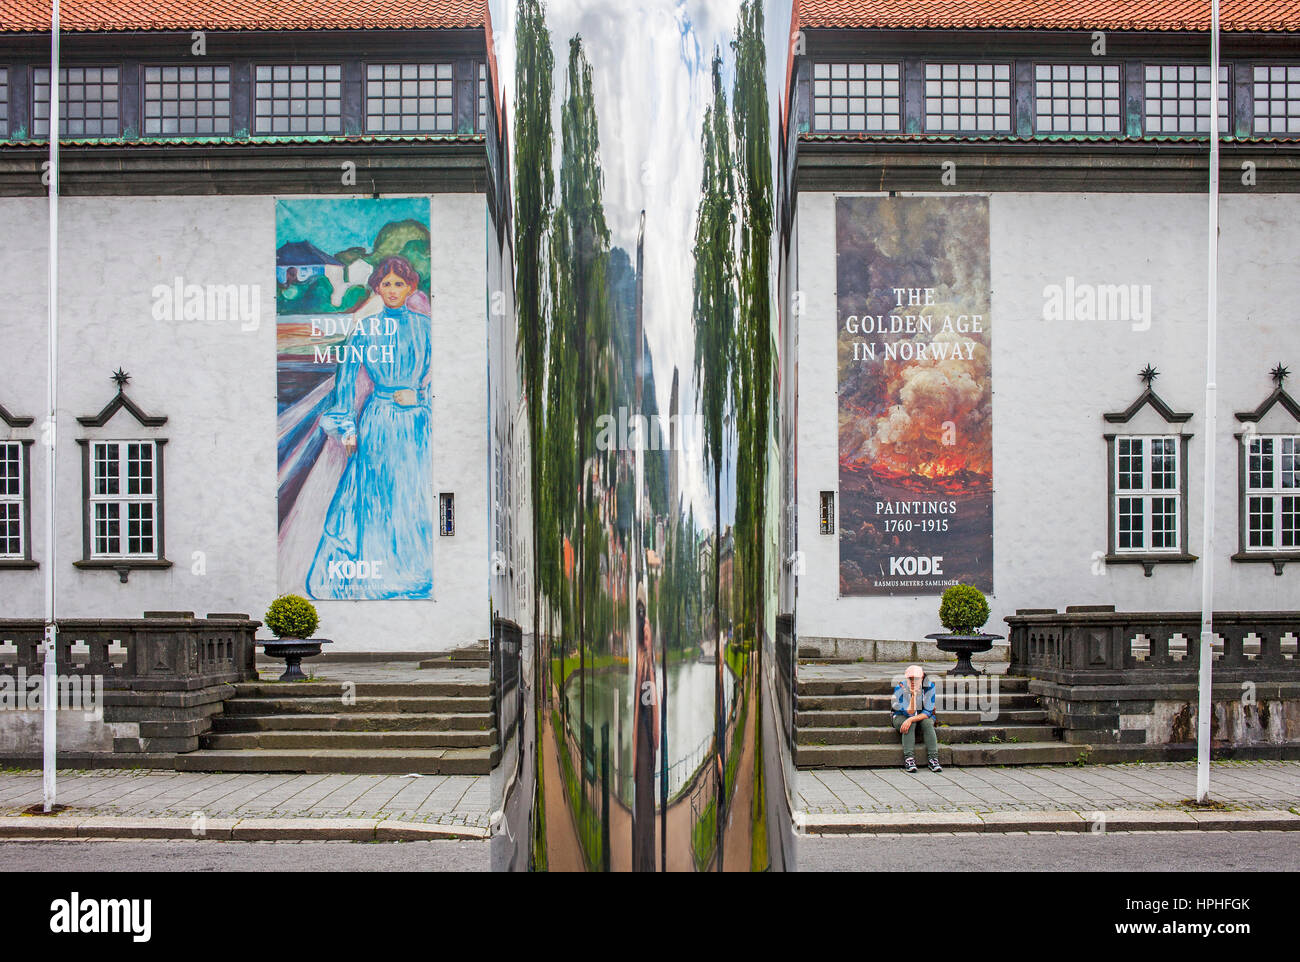 Sculpture and facade of Art Museum of Bergen, facade of Kode 3, Rasmus Meyer Collection,Bergen, Norway Stock Photo